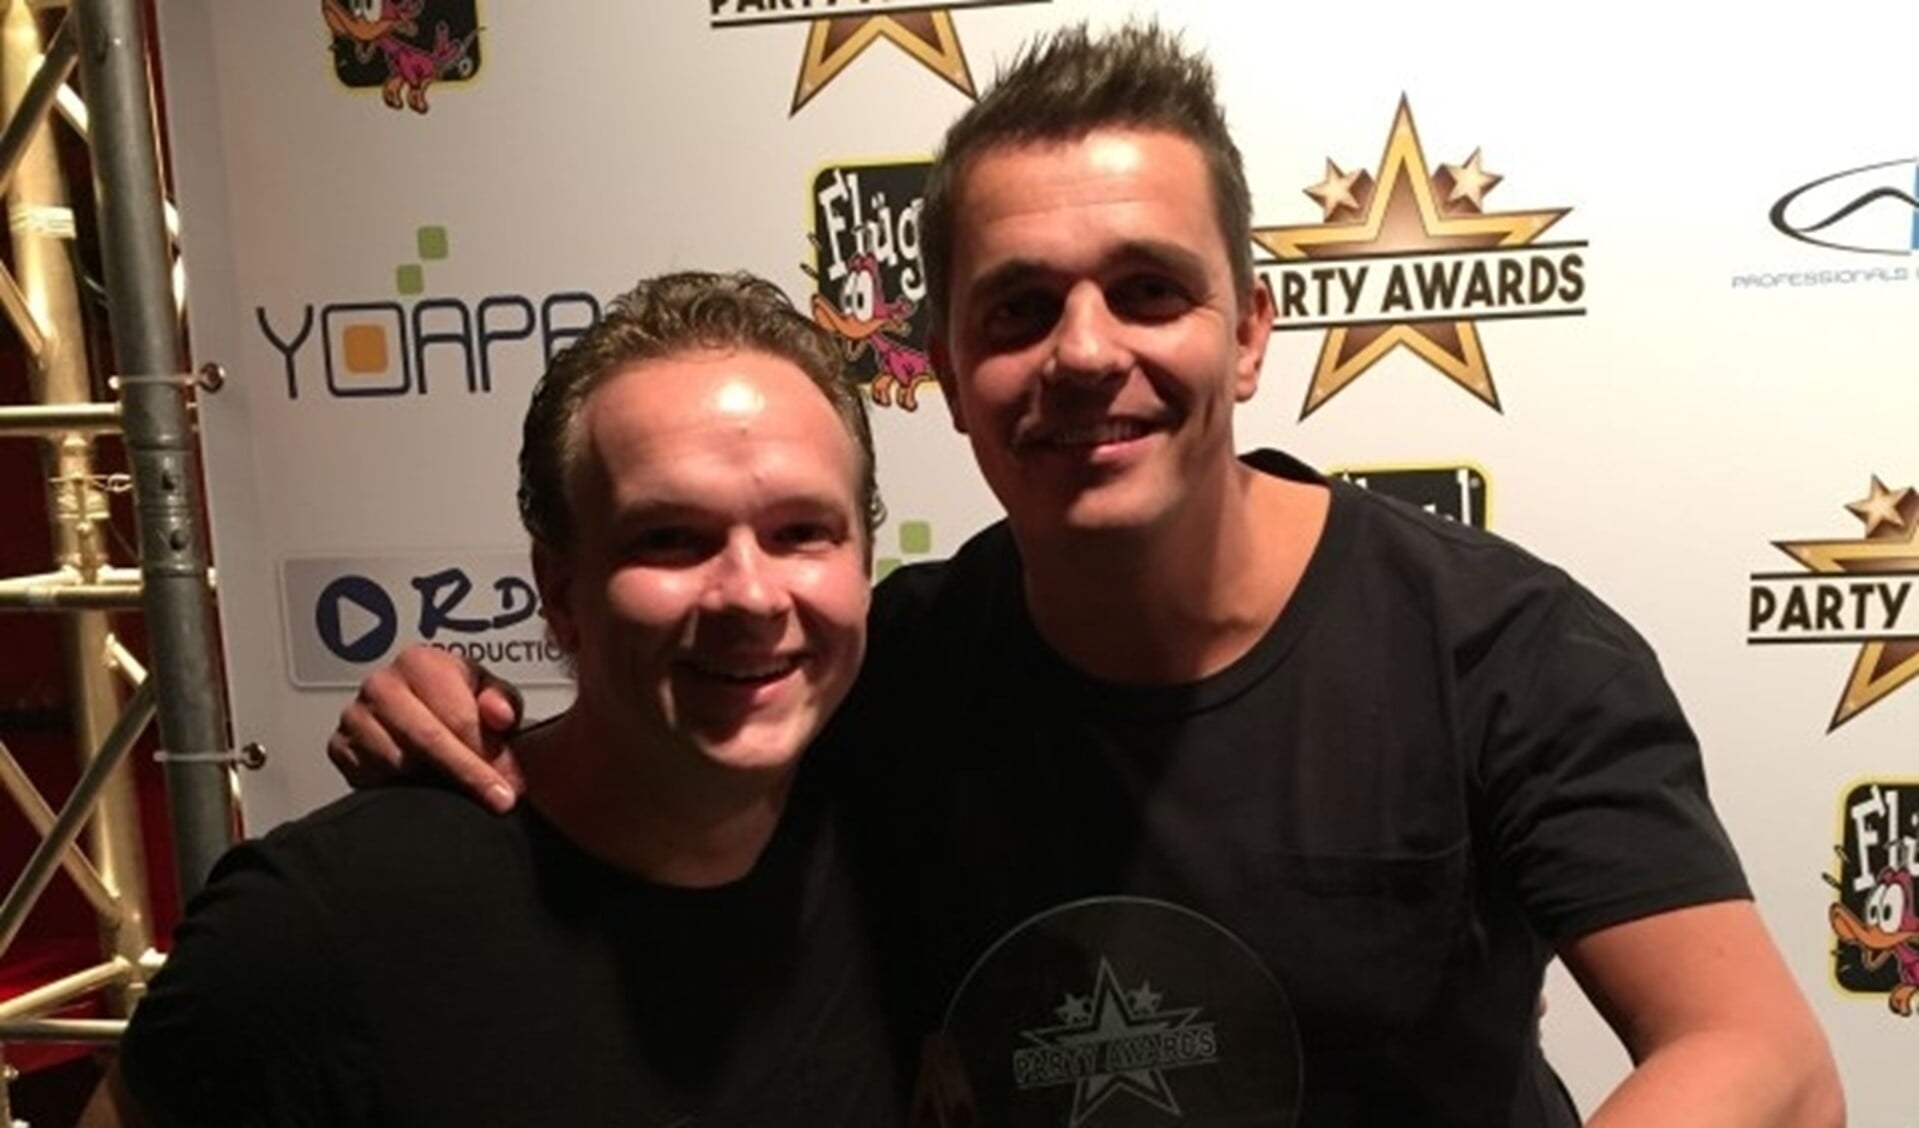 Jordy Graat wint Party Award, samen met Gert-Jan van der Zee.